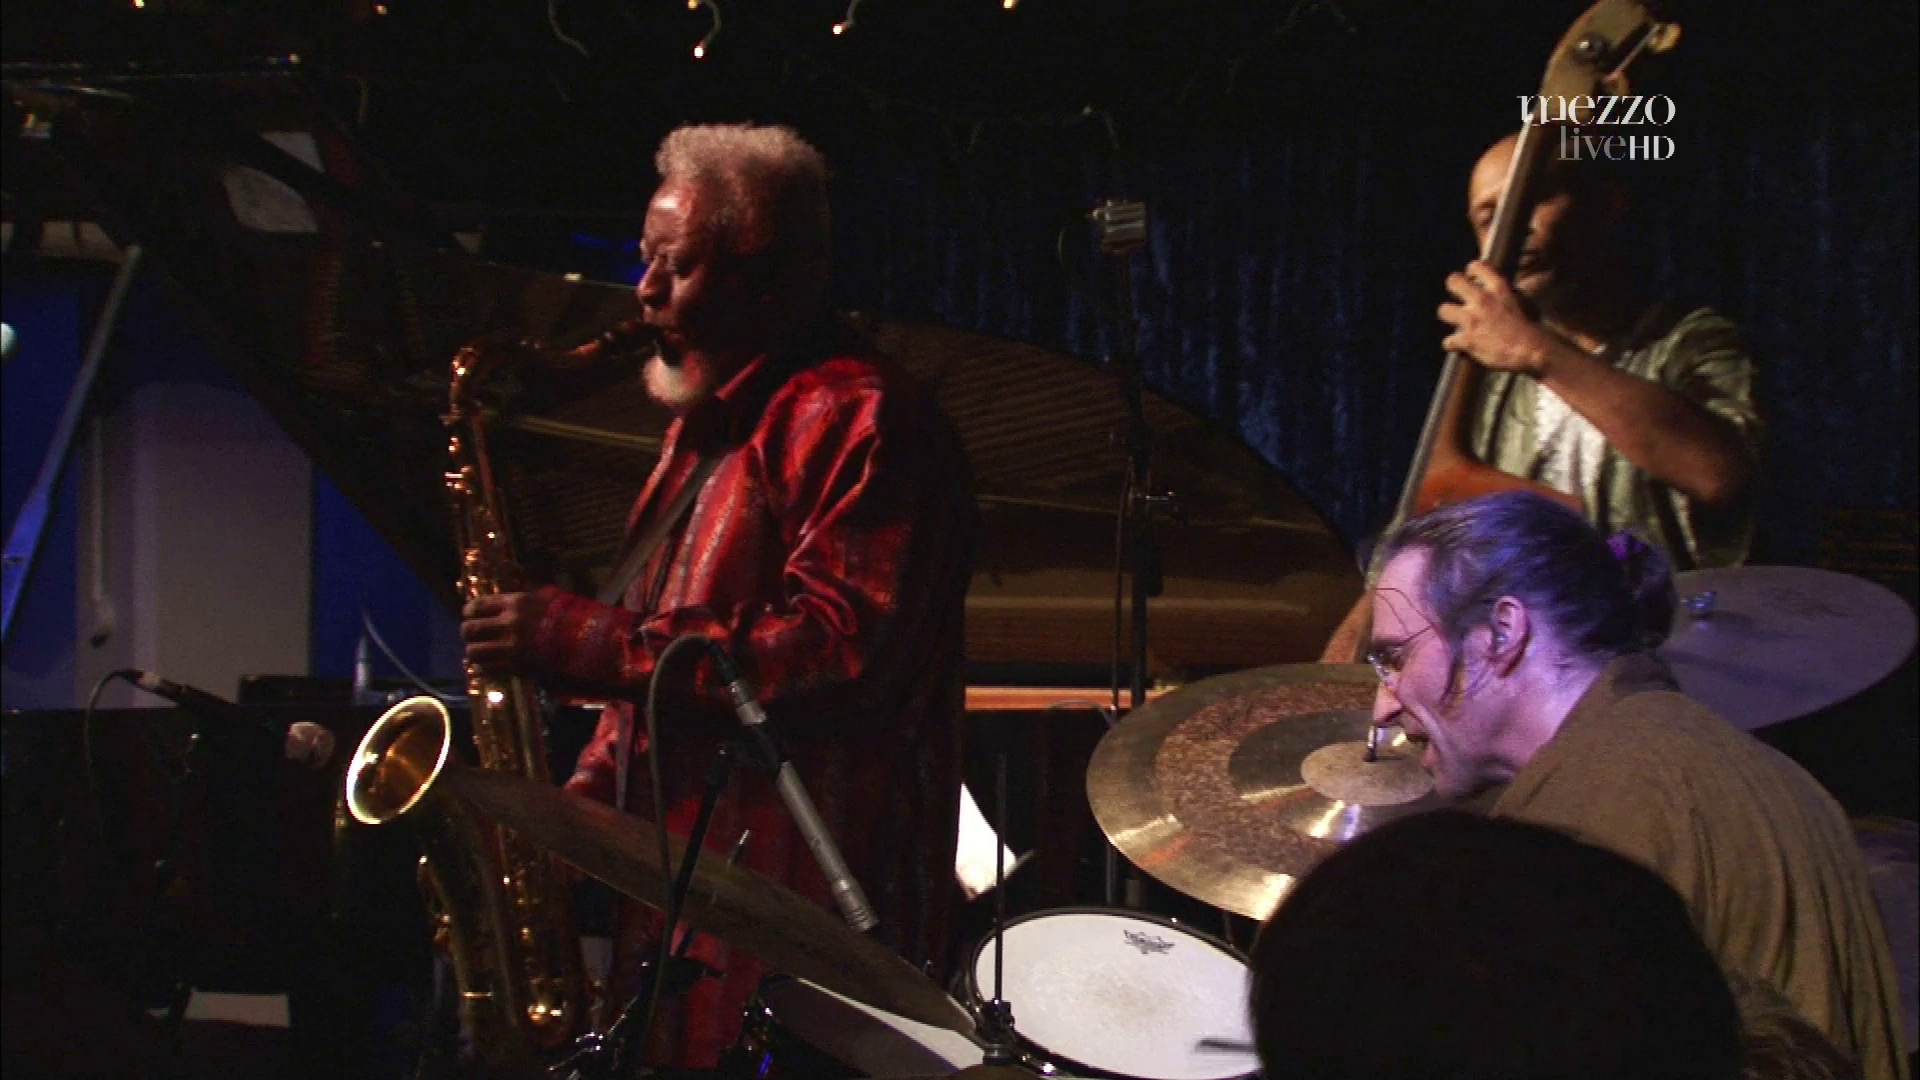 2011 Pharoah Sanders - Live at Jazz Cafe London [HDTV 1080p] 2